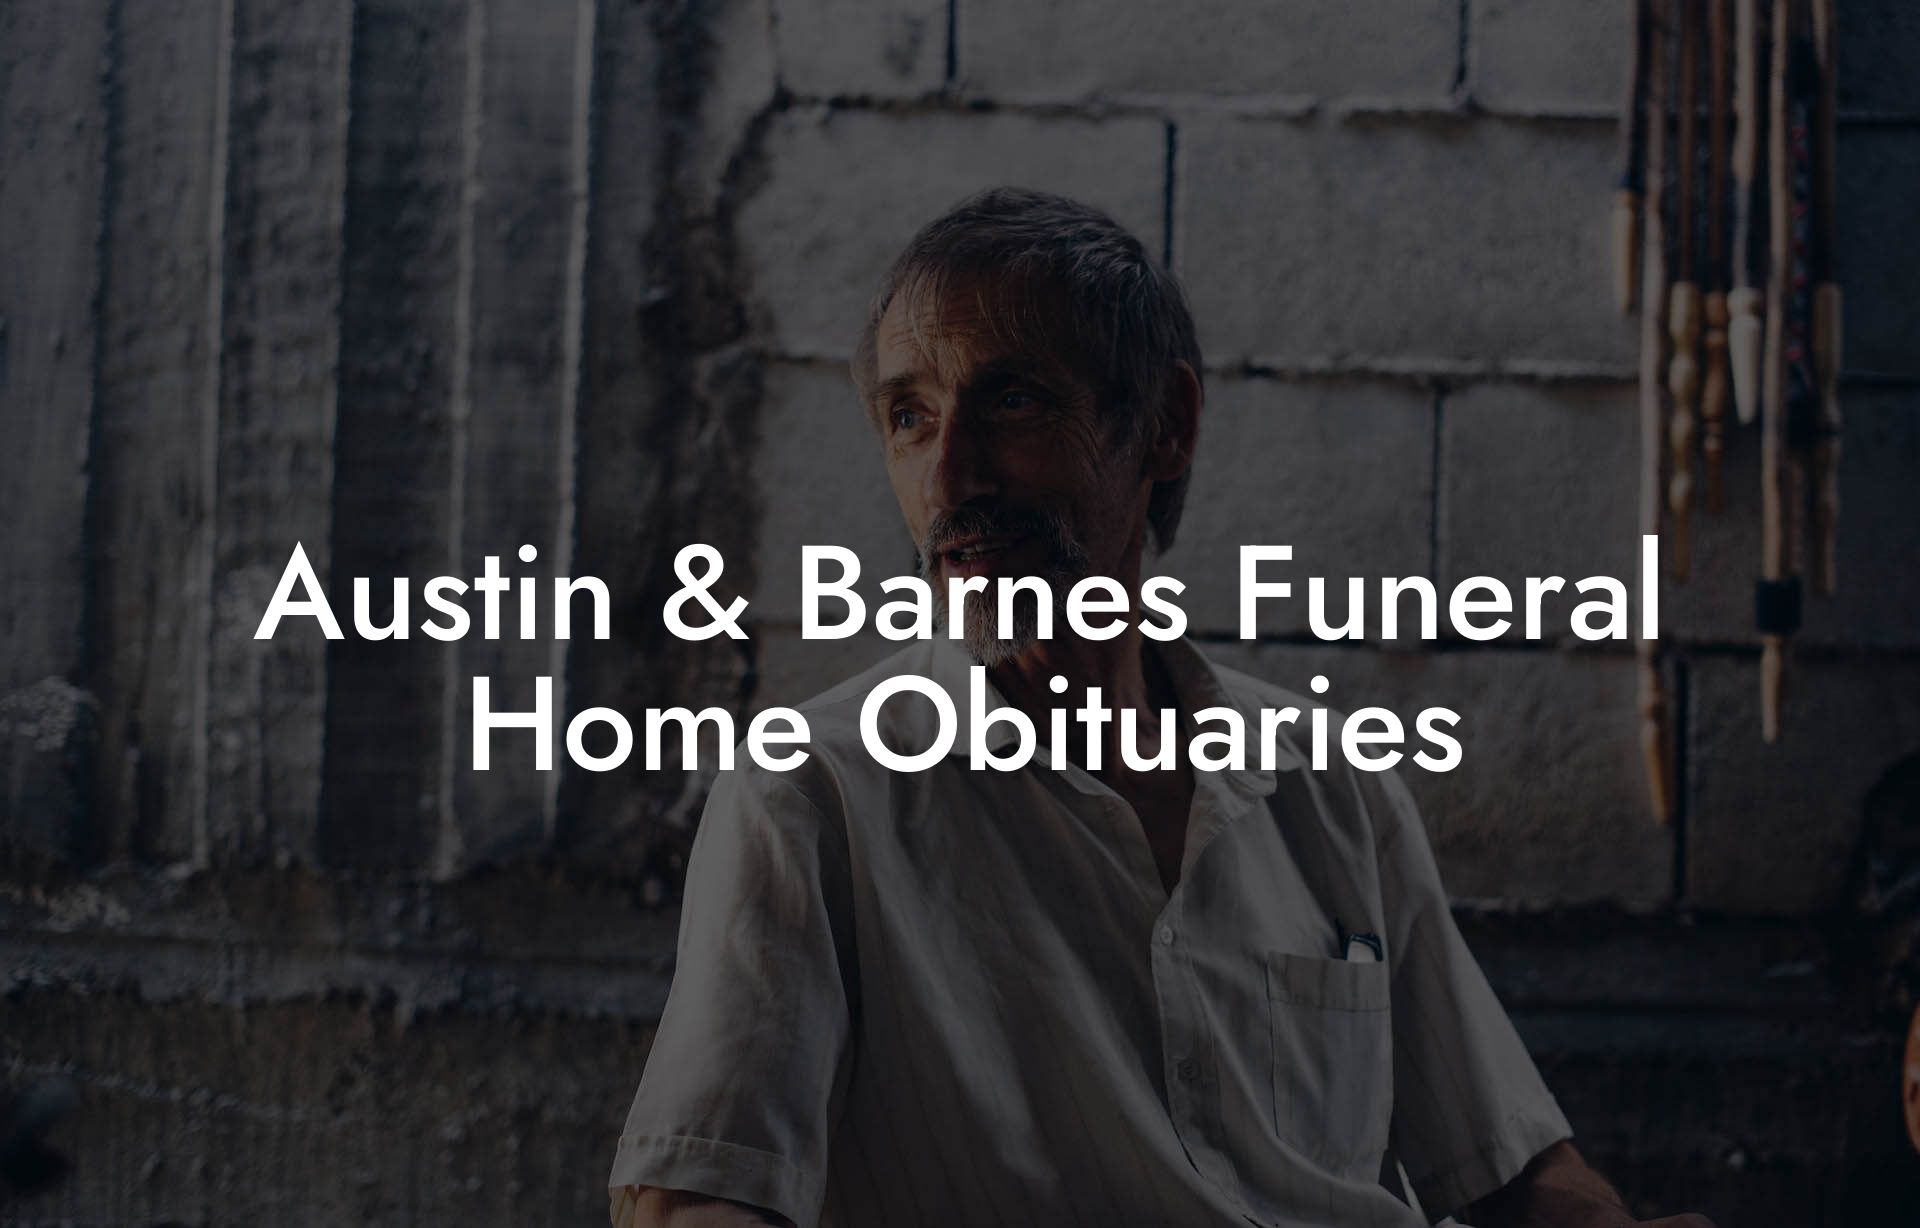 Austin & Barnes Funeral Home Obituaries